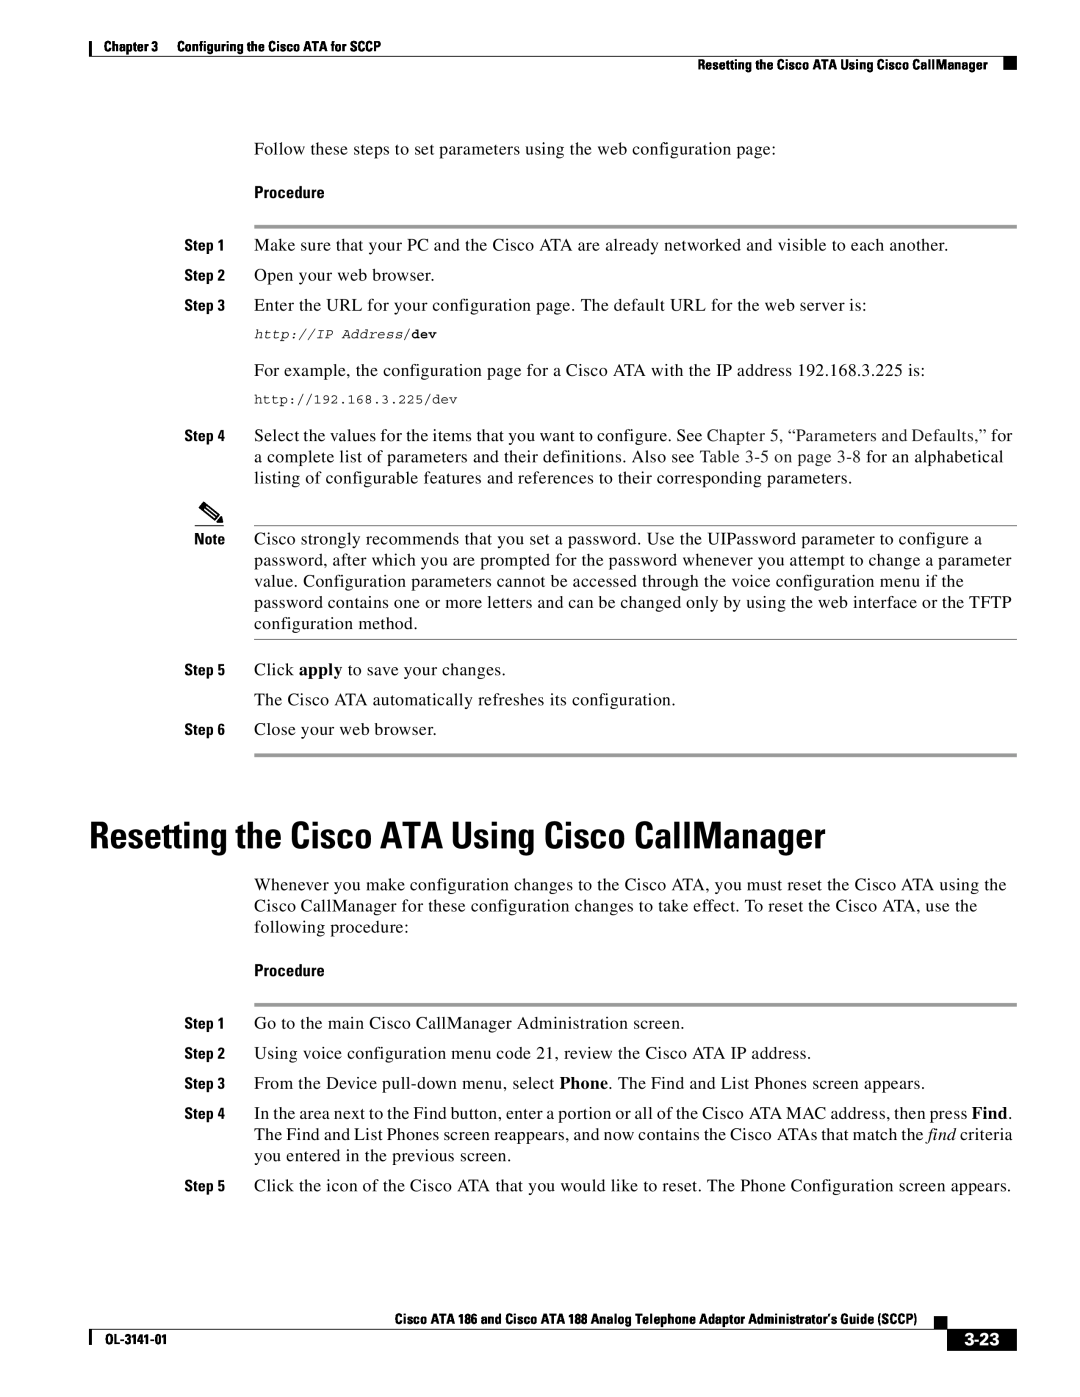 Cisco Systems ATA 188, ATA 186 manual Resetting the Cisco ATA Using Cisco CallManager, Procedure, 3-23 